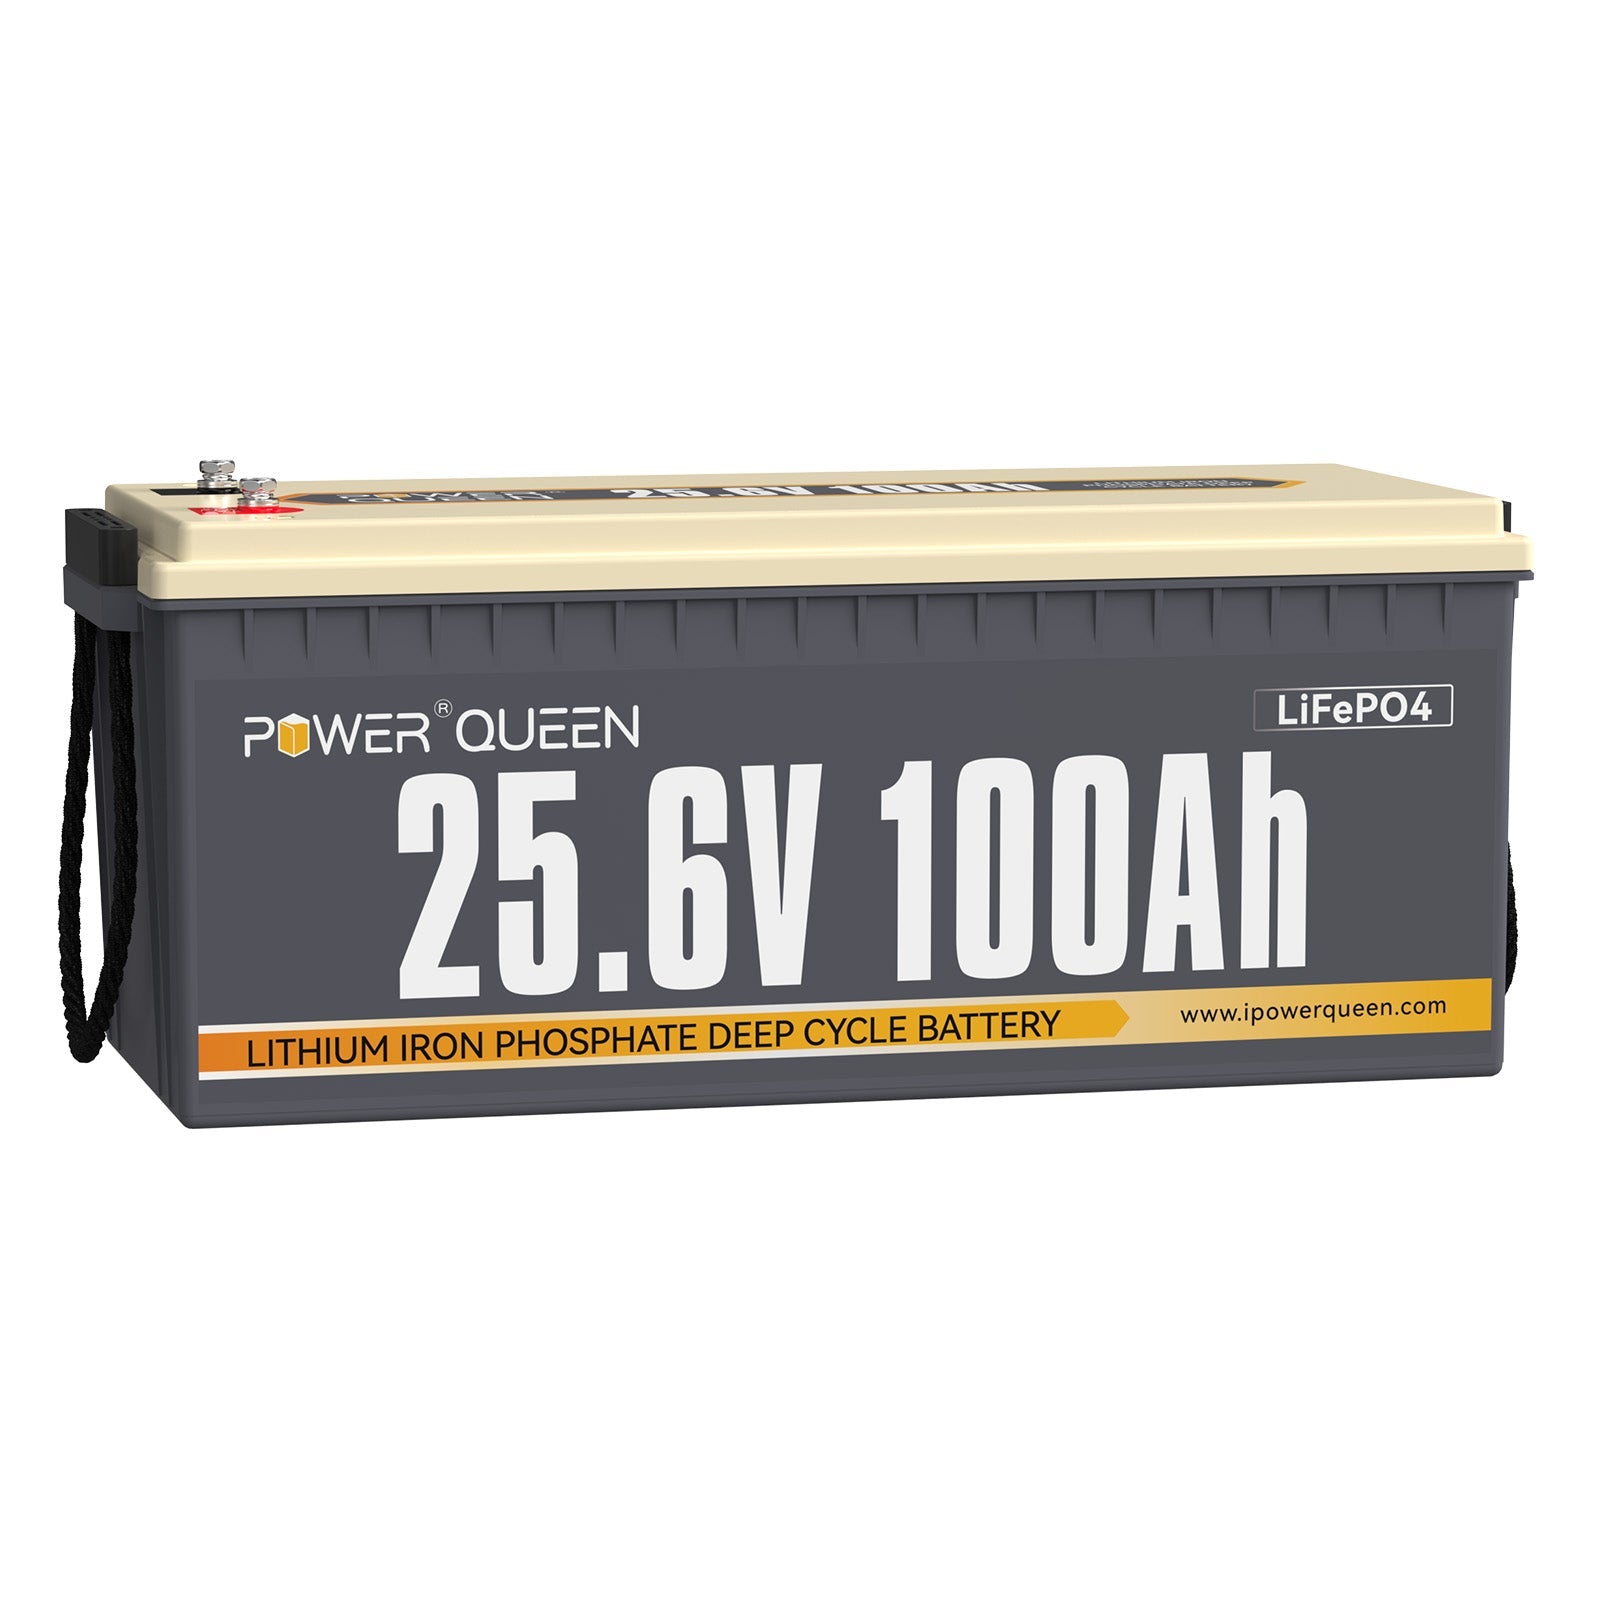 【0% IVA】Batería Power Queen 24V 100Ah LiFePO4, BMS 100A incorporado